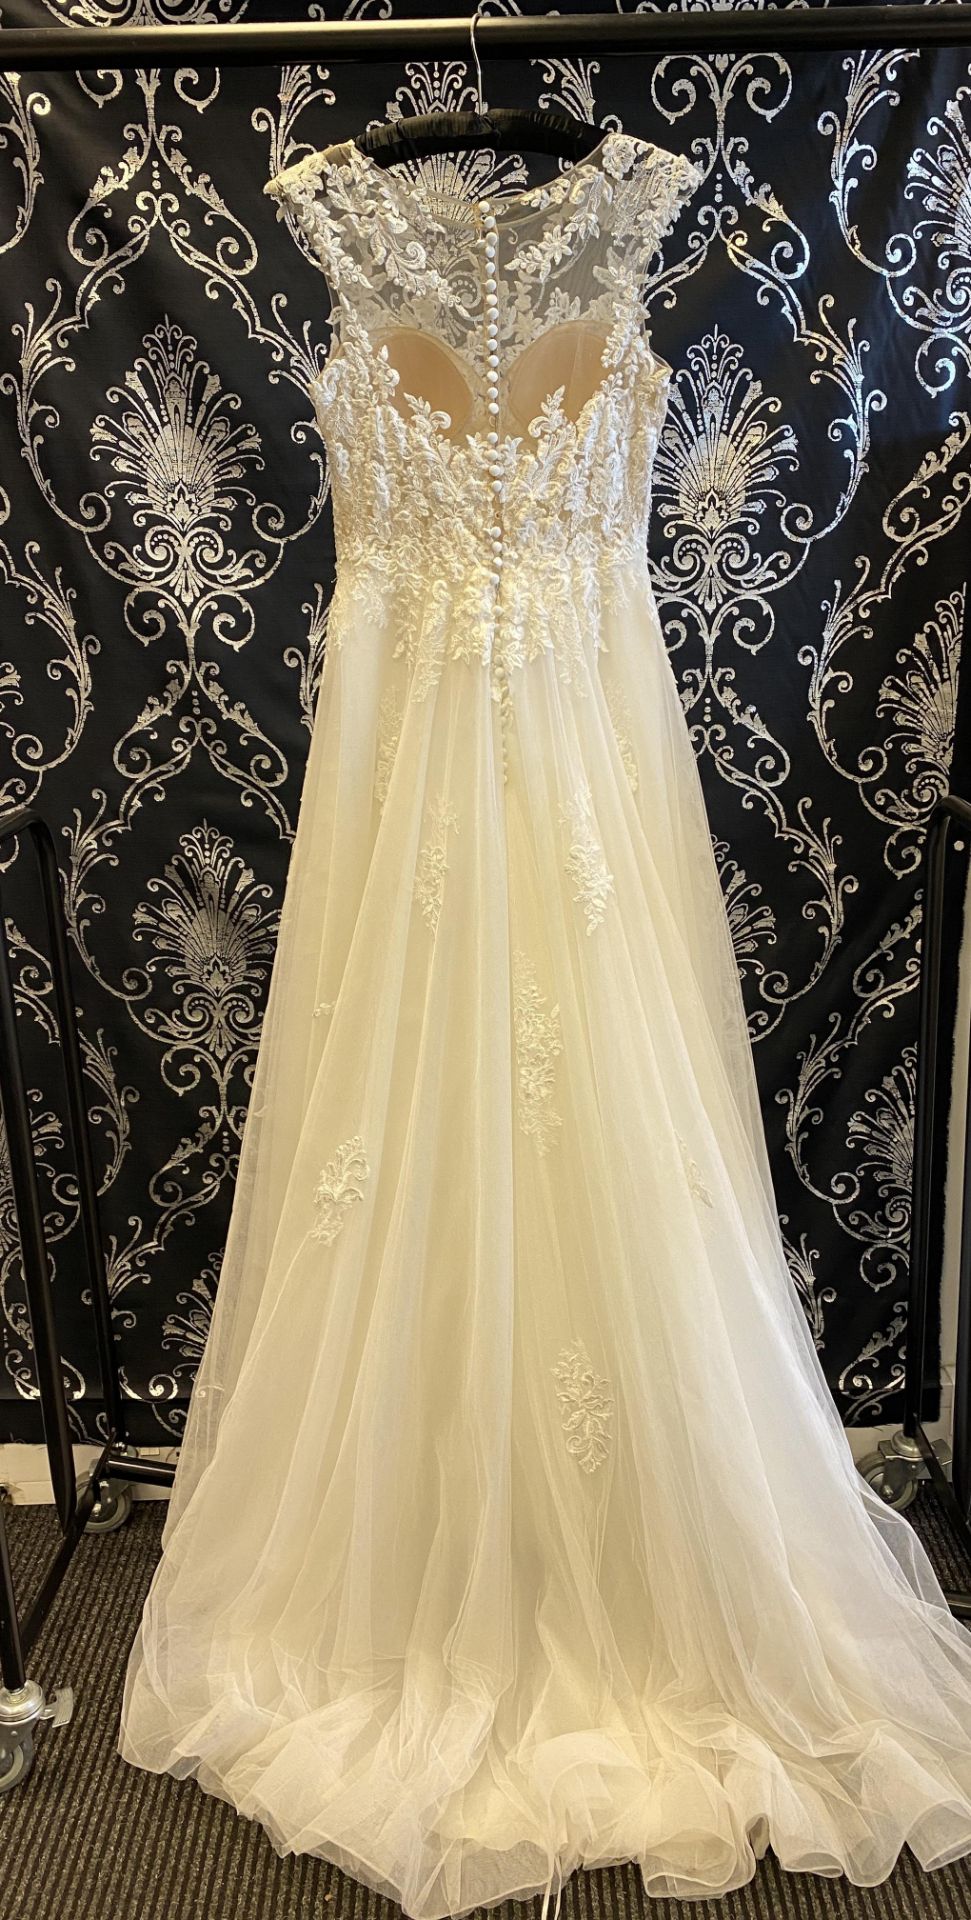 1 x PRONOVIAS Stunning Lace And Chiffon Full Skirted Designer Wedding Dress RRP £1,800 UK12 - Image 5 of 7